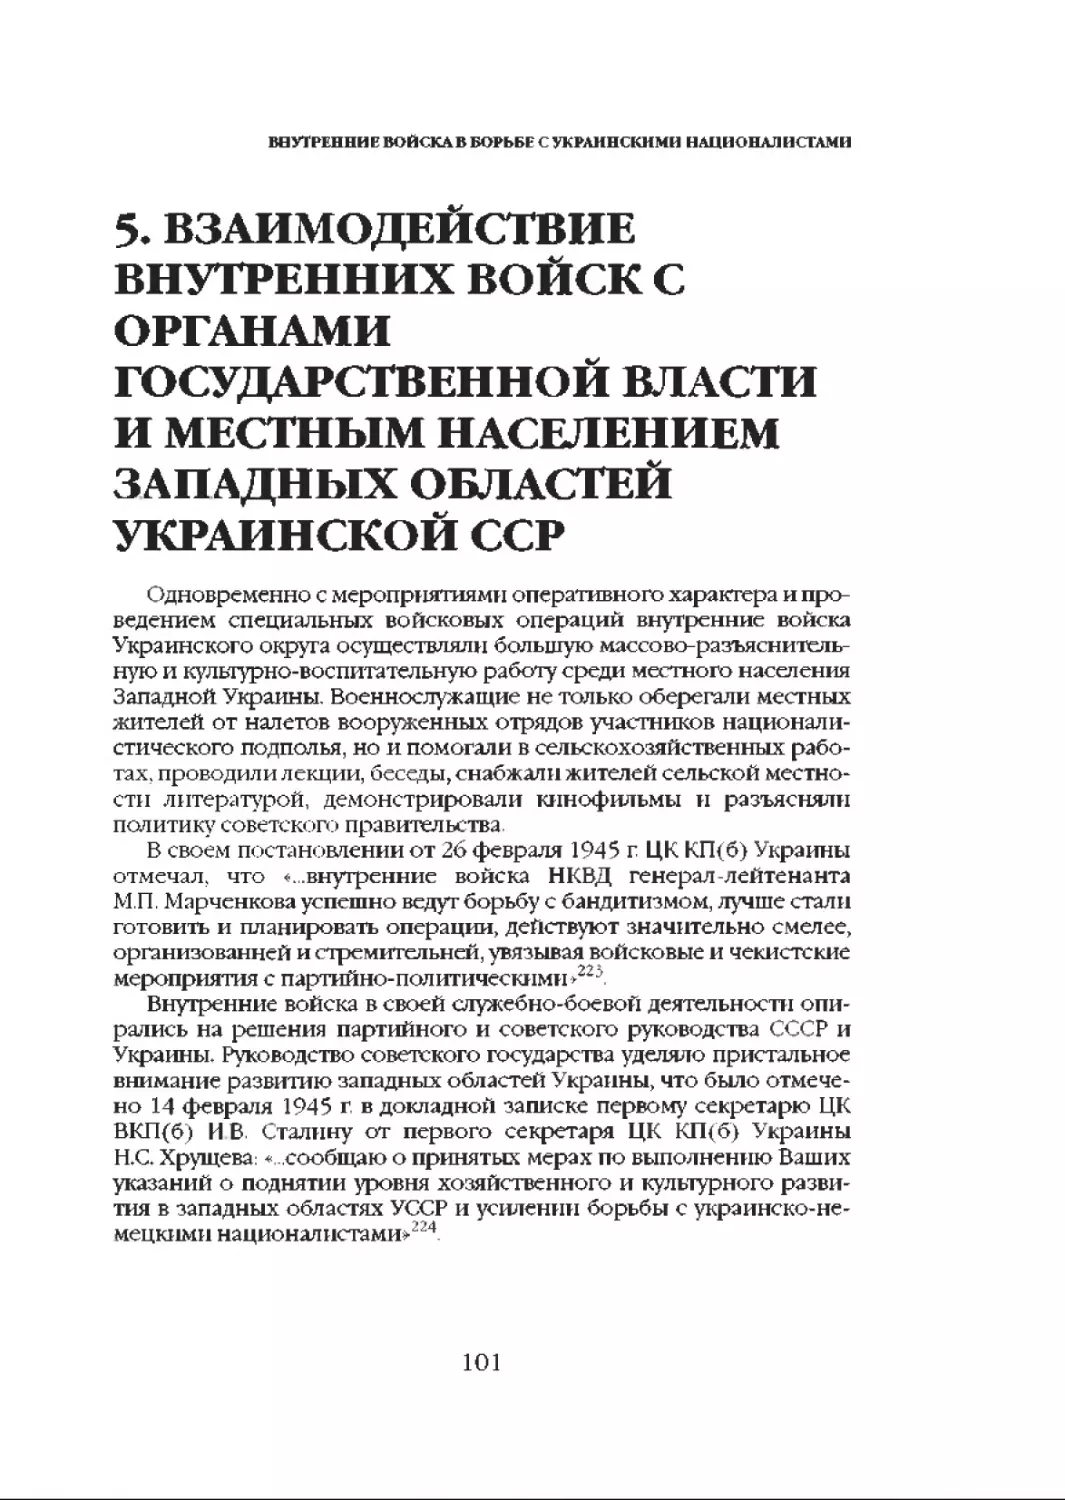 5. Взаимодействие внутренних войск с органами государственной власти и местным населением западных областей Украинской ССР